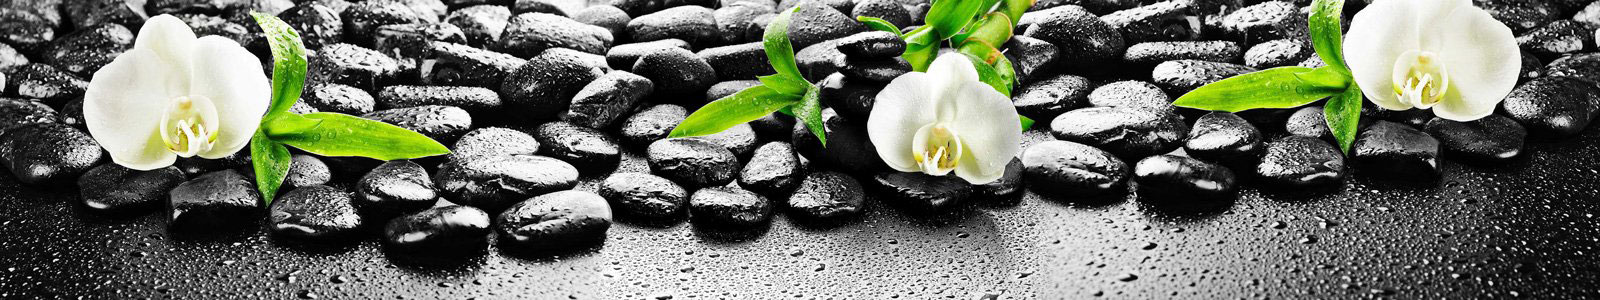 №6413 - Белая орхидея на камнях с каплями воды (избранный фокус)